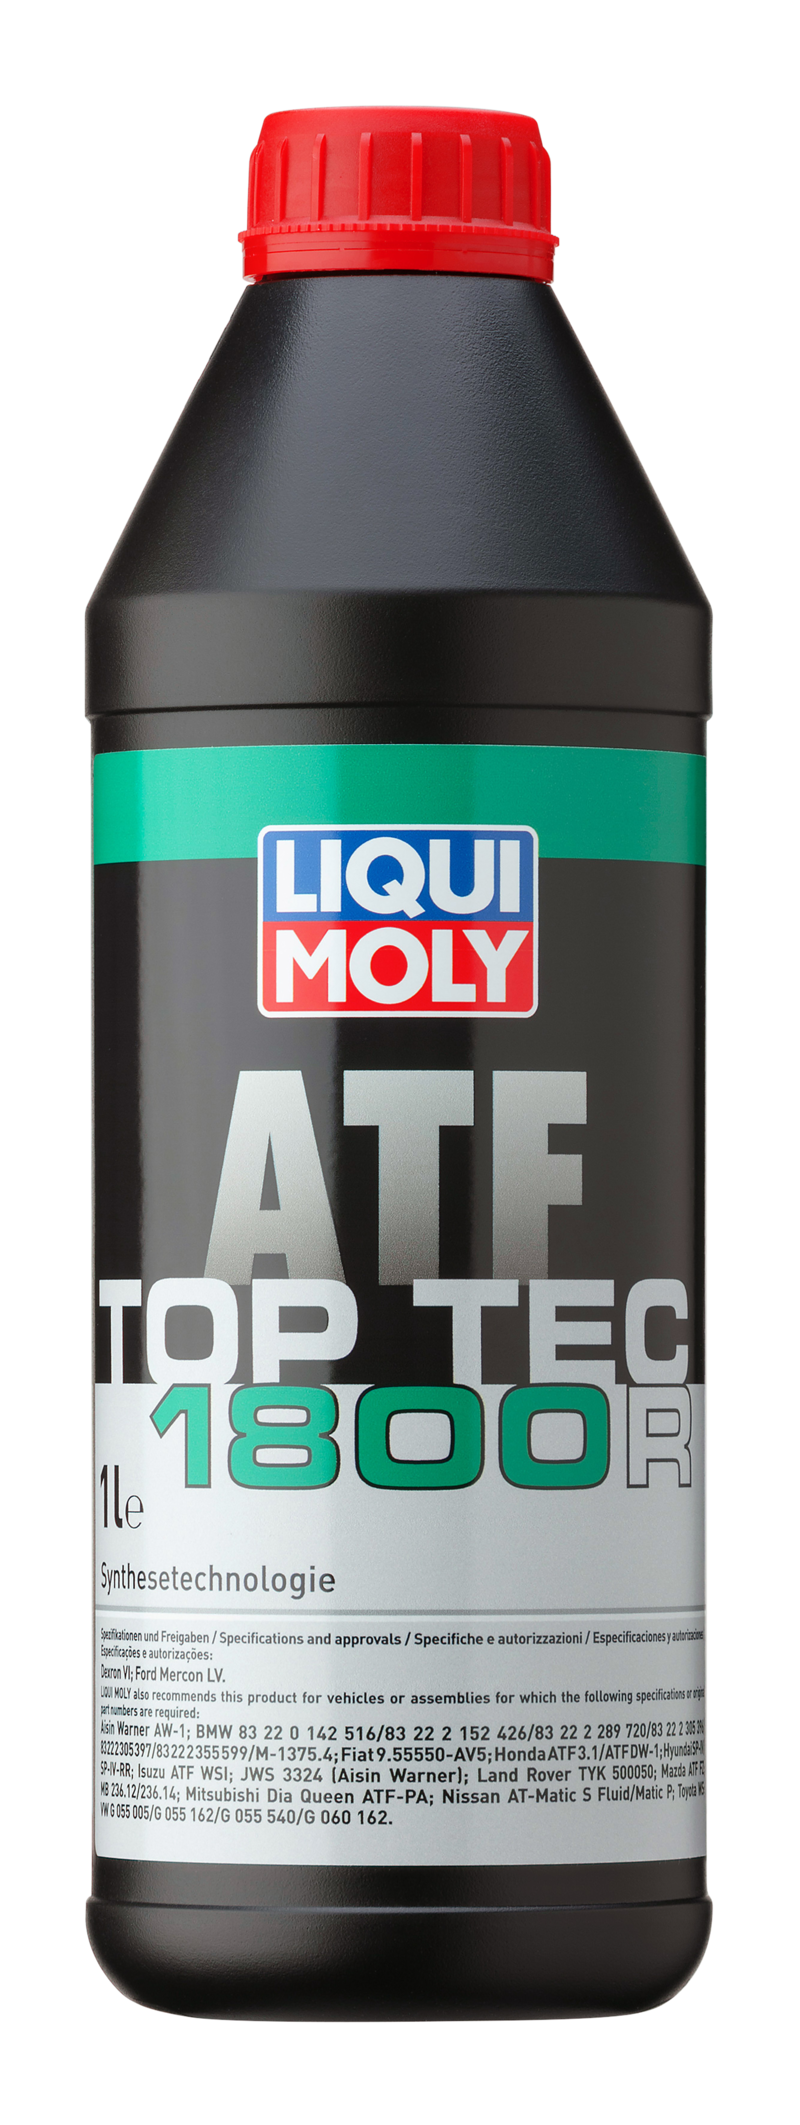 Top Tec ATF 1800 R (1 L) Liqui Moly